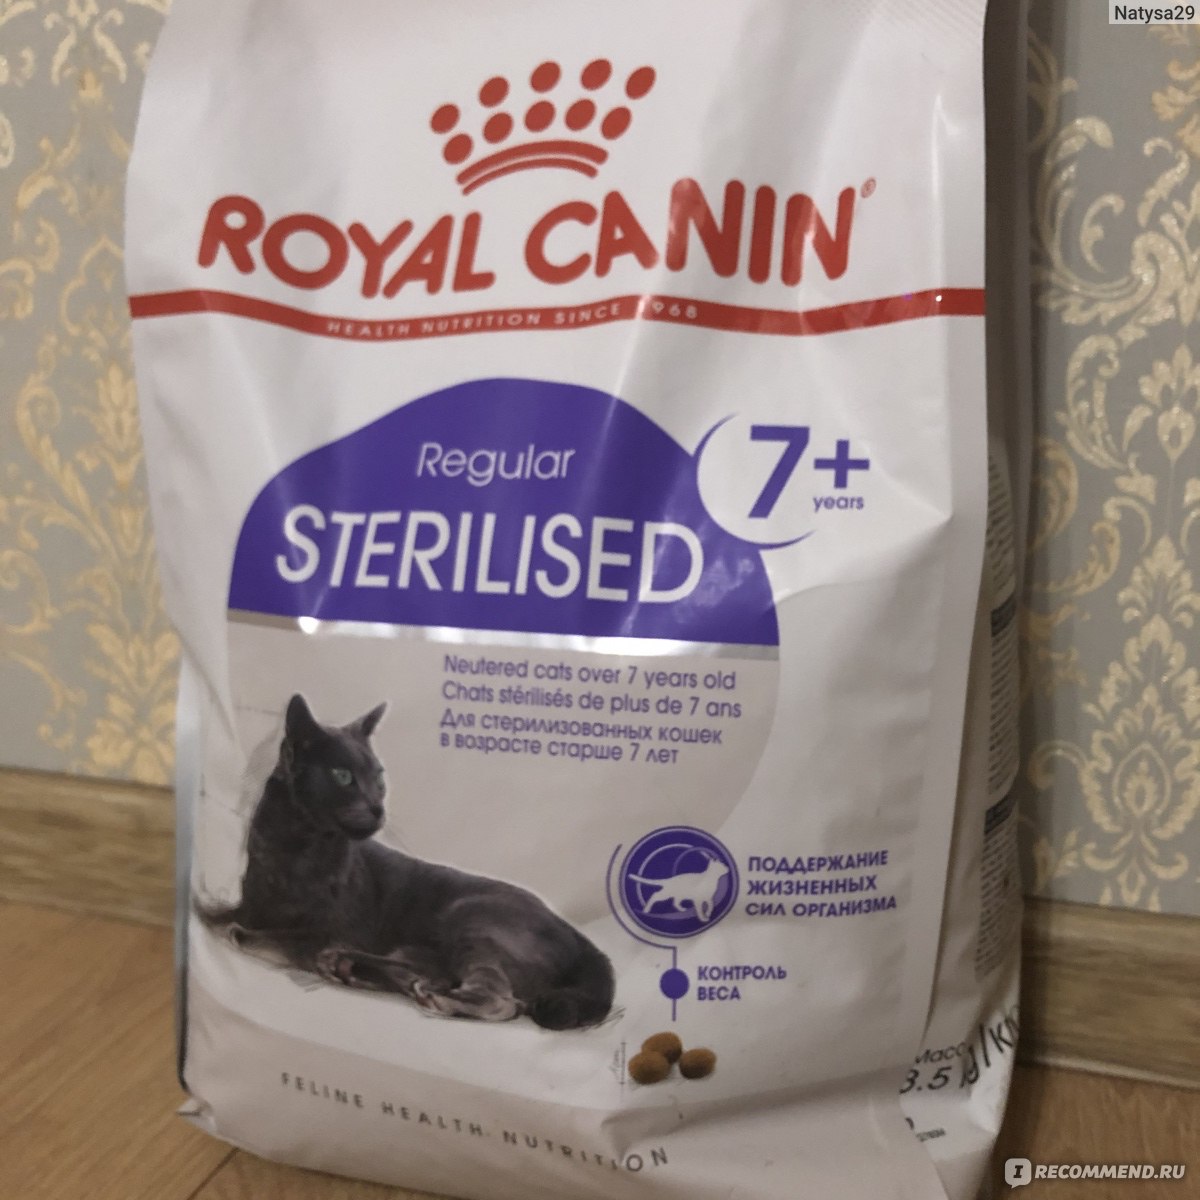 Royal canin для кошек sterilised. Роял Канин для котов. Роял Канин для стерилизованных котов старше 7. Корм Роял Канин для кошек стерилизованных старше 7. Корм Royal Canin для котов 7+.